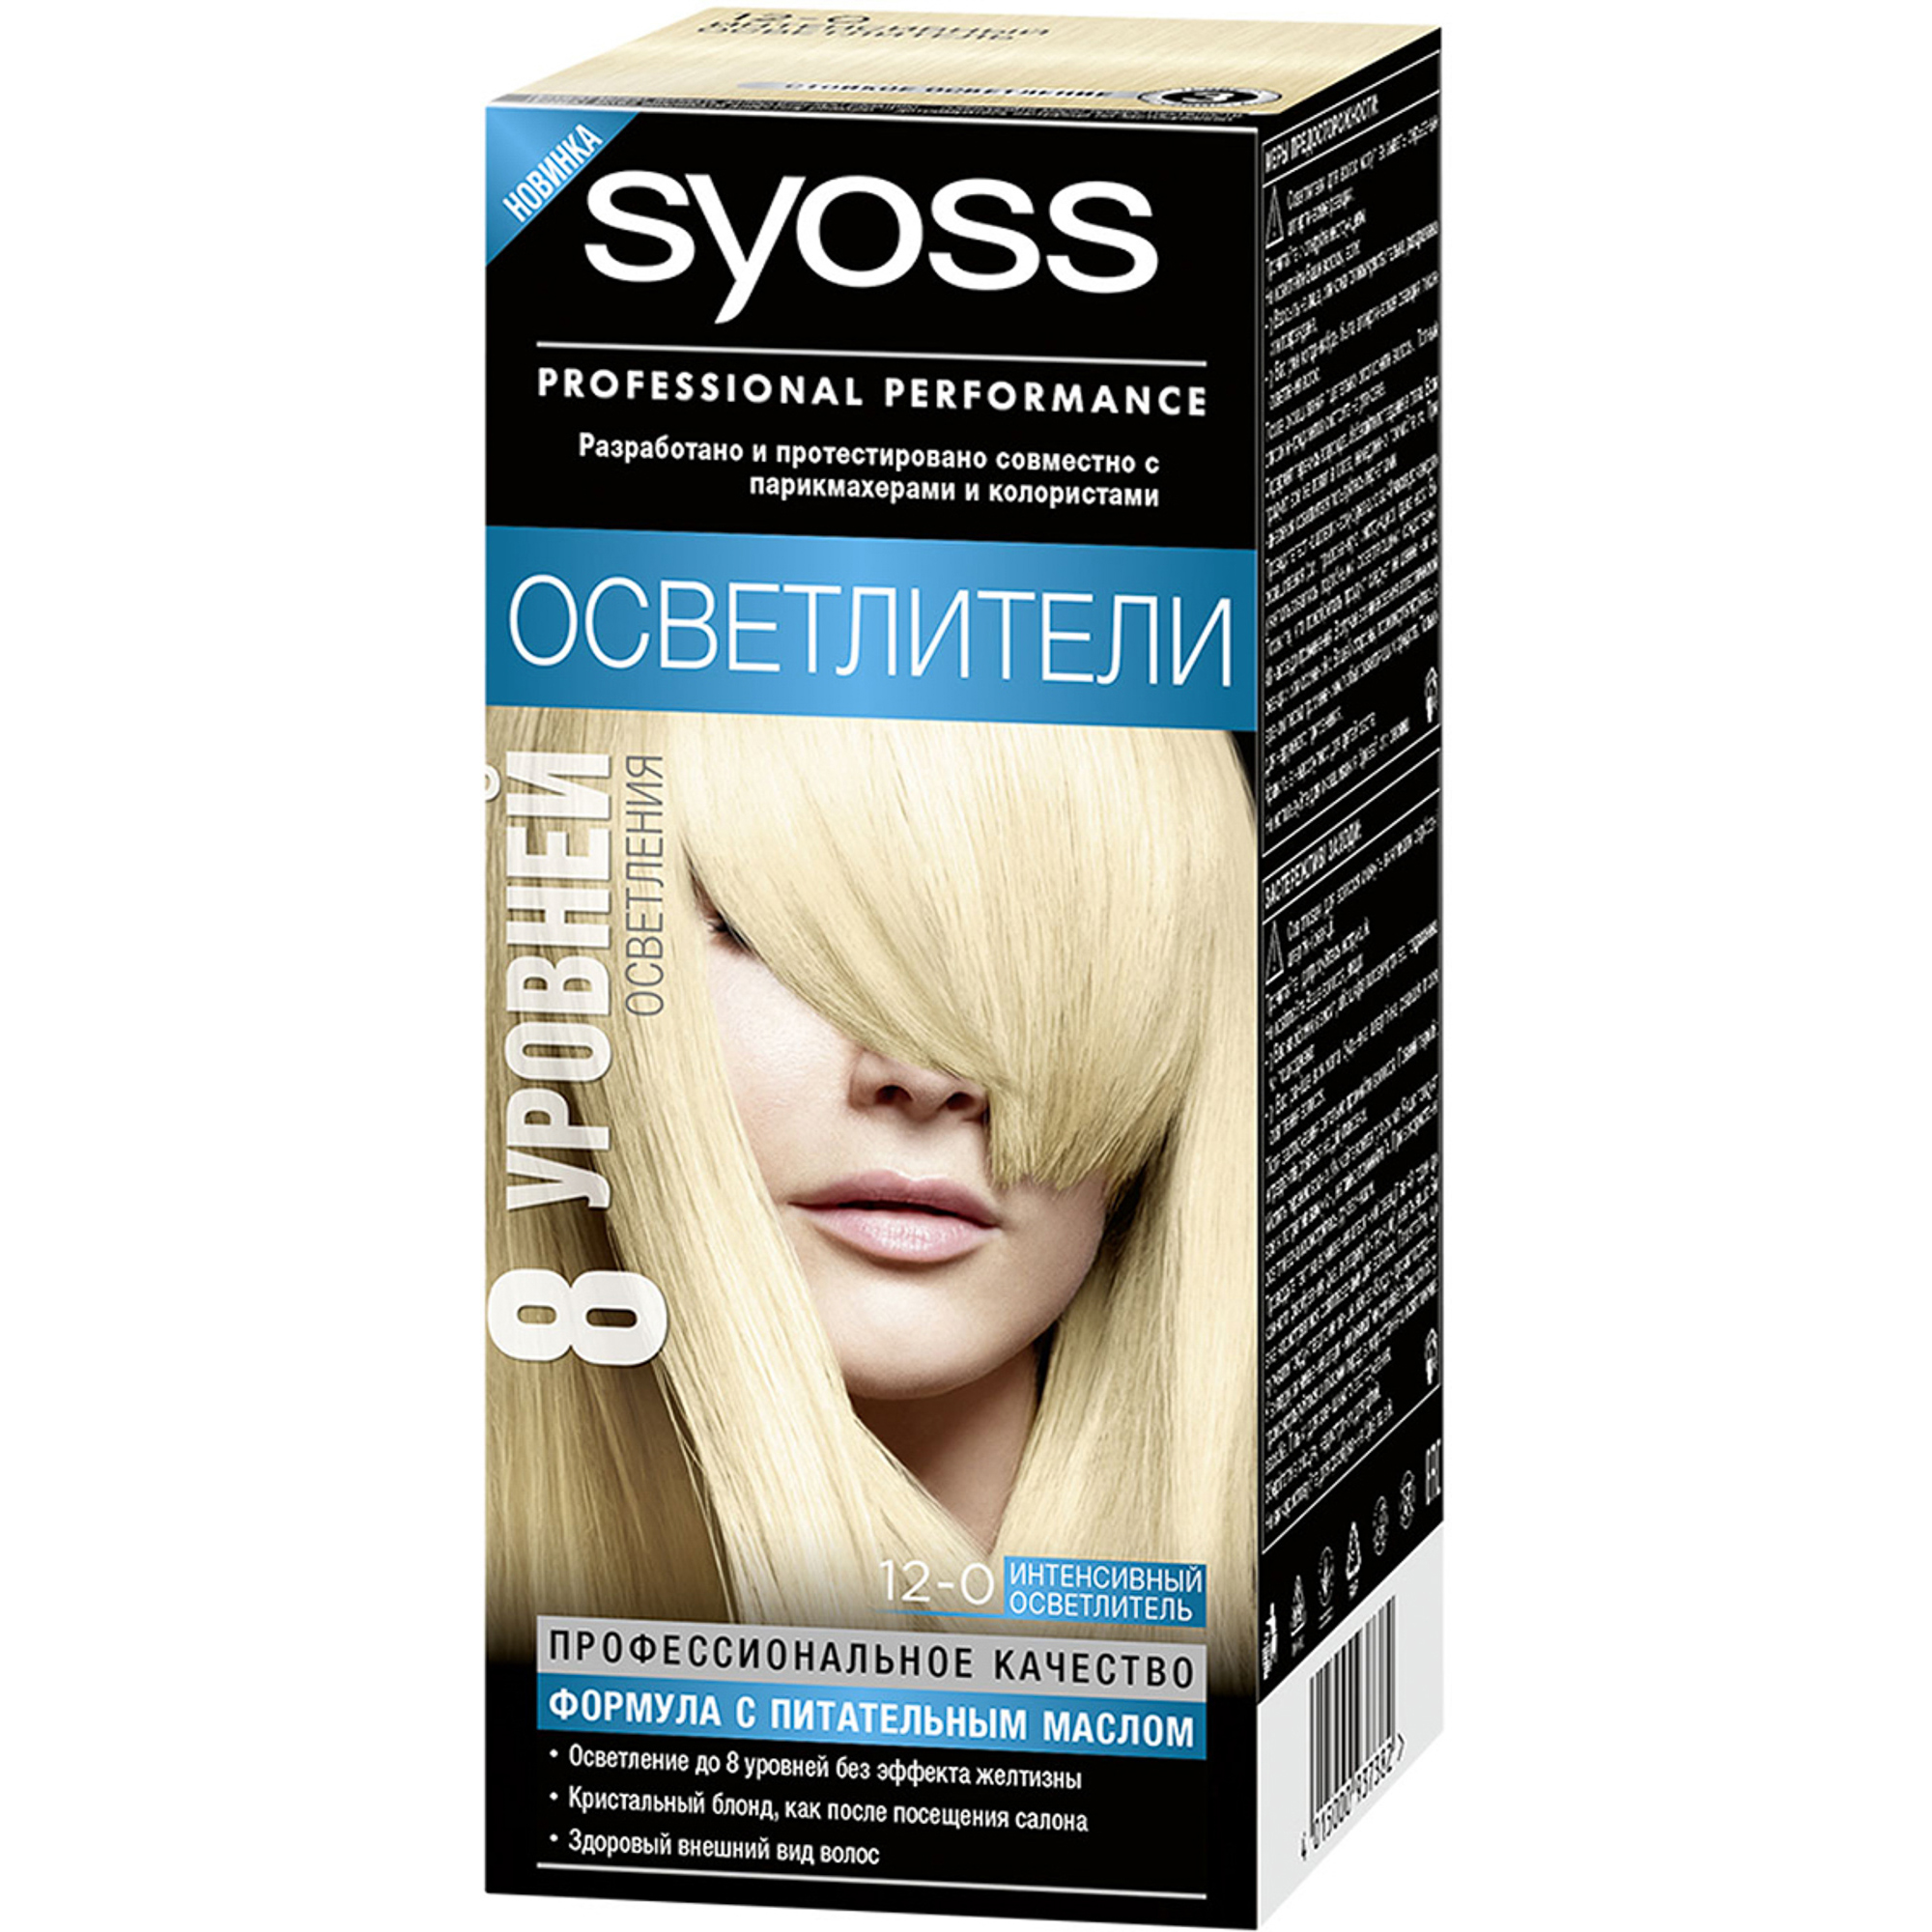 Краска для волос Syoss Осветлители 12-0 Интенсивный осветлитель крем botavikos интенсивный для рук и ног 75 мл